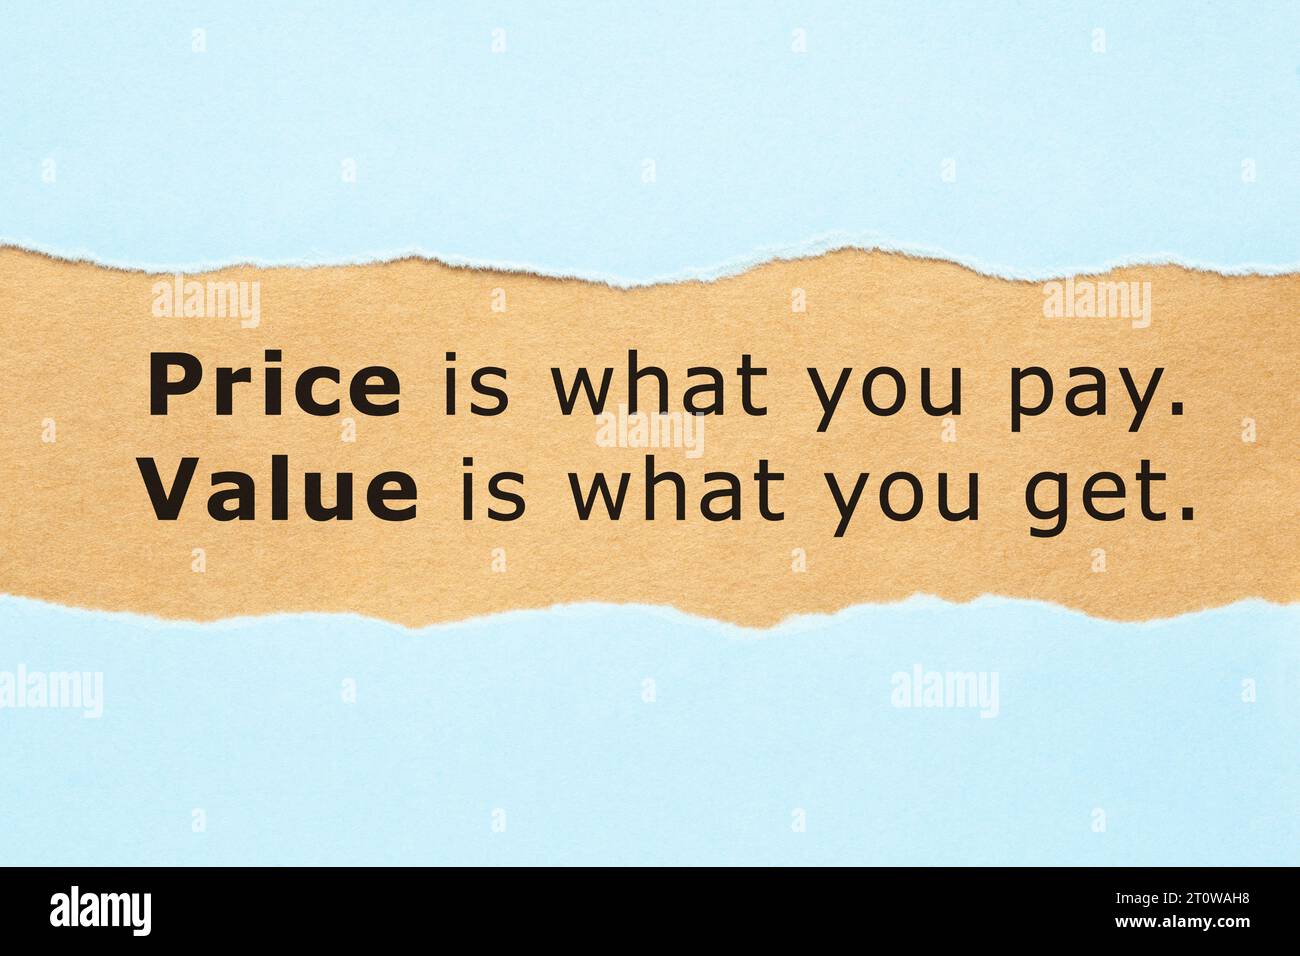 Il prezzo della quotazione finanziaria è ciò che paghi il valore è ciò che ottieni, che appare dietro un foglio blu lacerato. Foto Stock